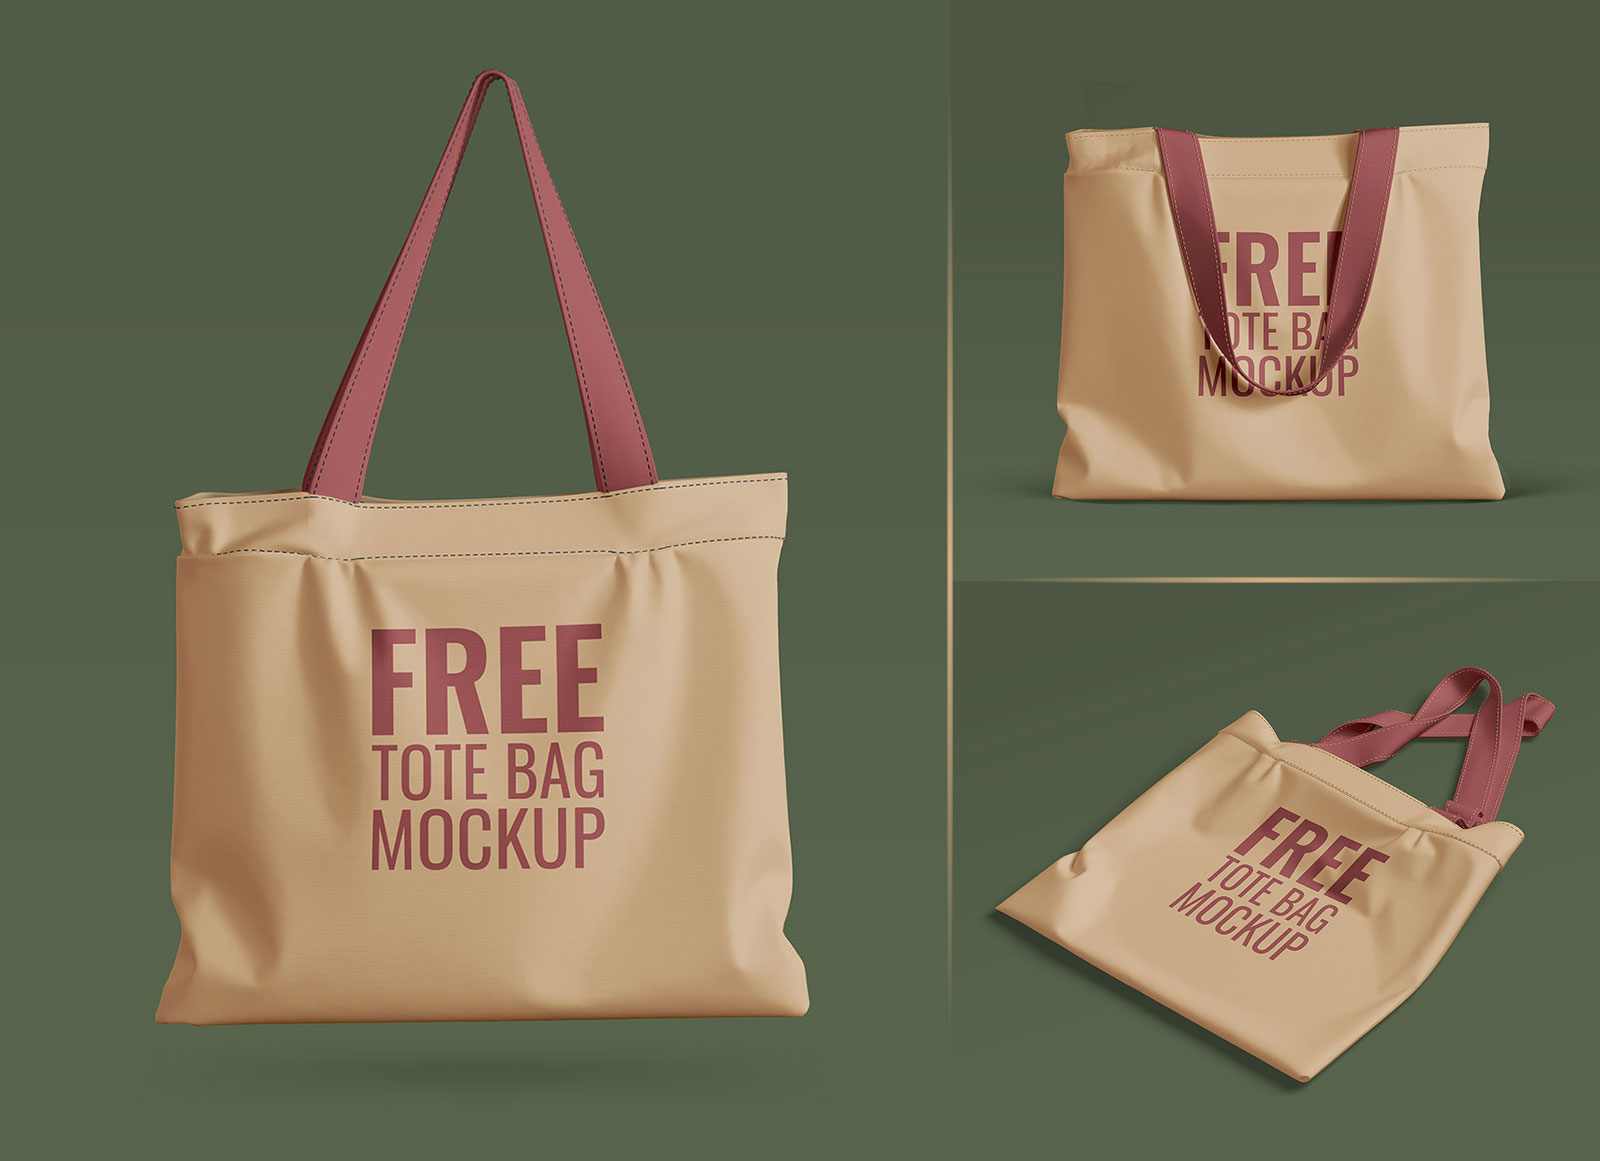 Free Tote Canvas Bag Mockup (PSD)